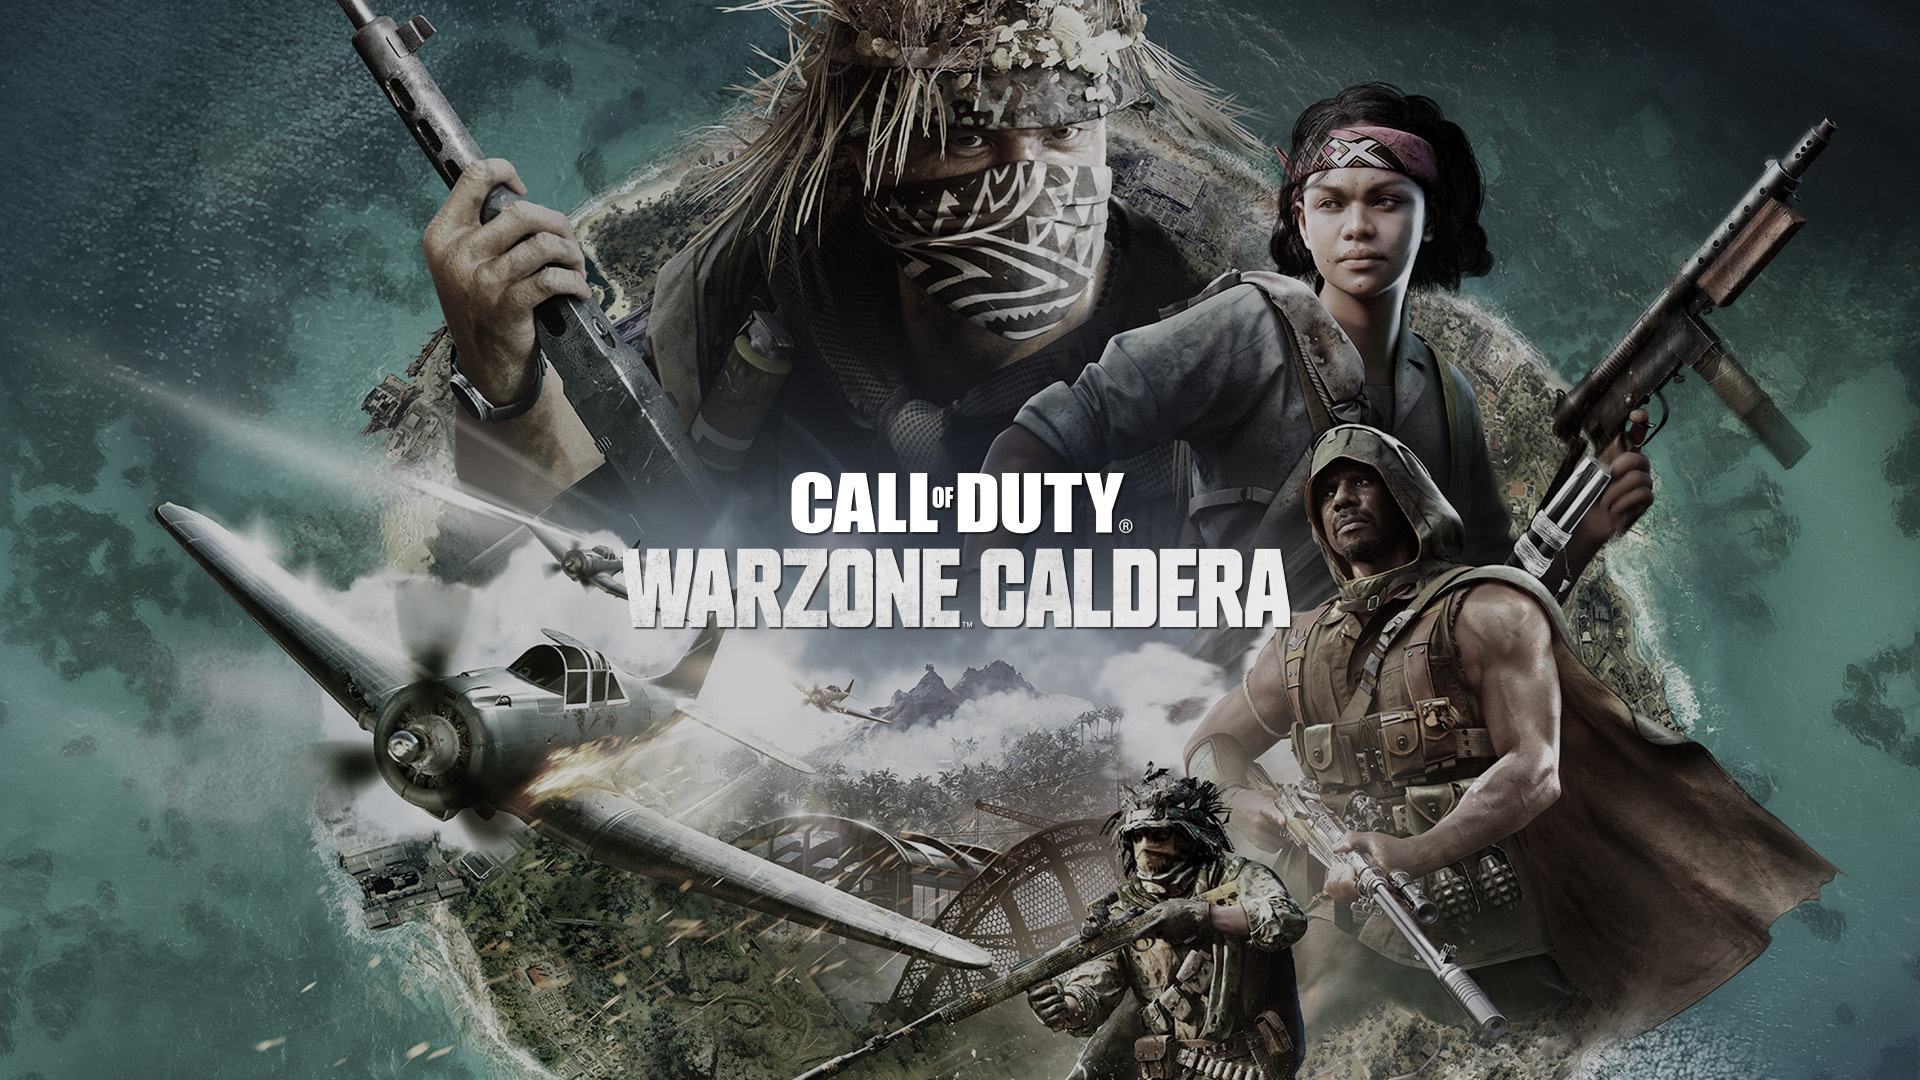 Imagem mostra banner de divulgação de Warzone Caldera, modo online de Call of Duty que será desligado em setembro